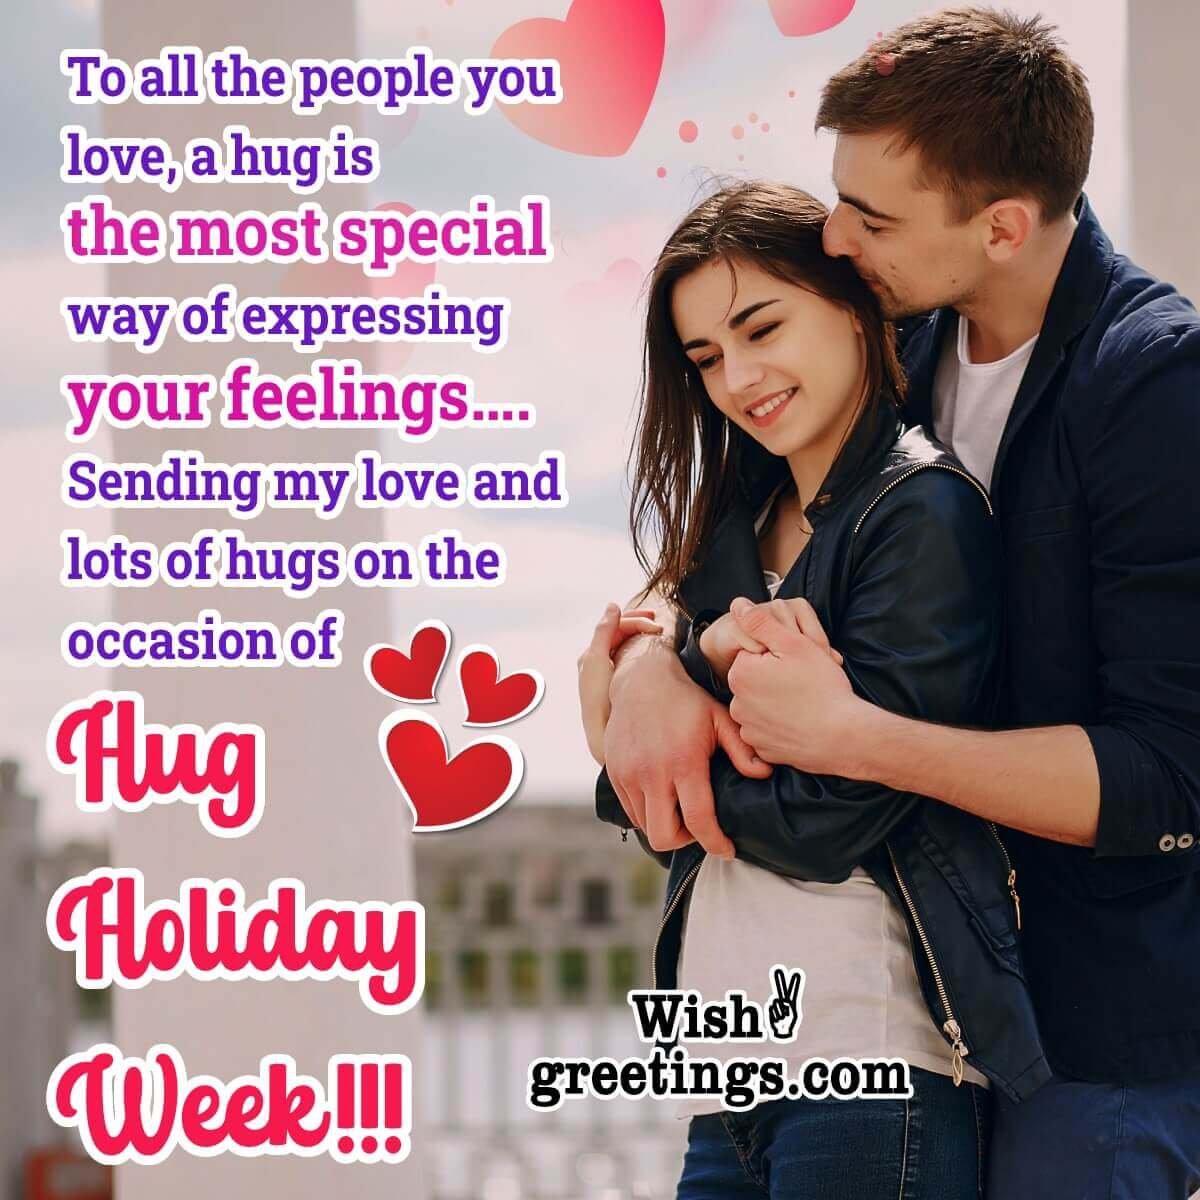 Hug Holiday Week Wish Photo